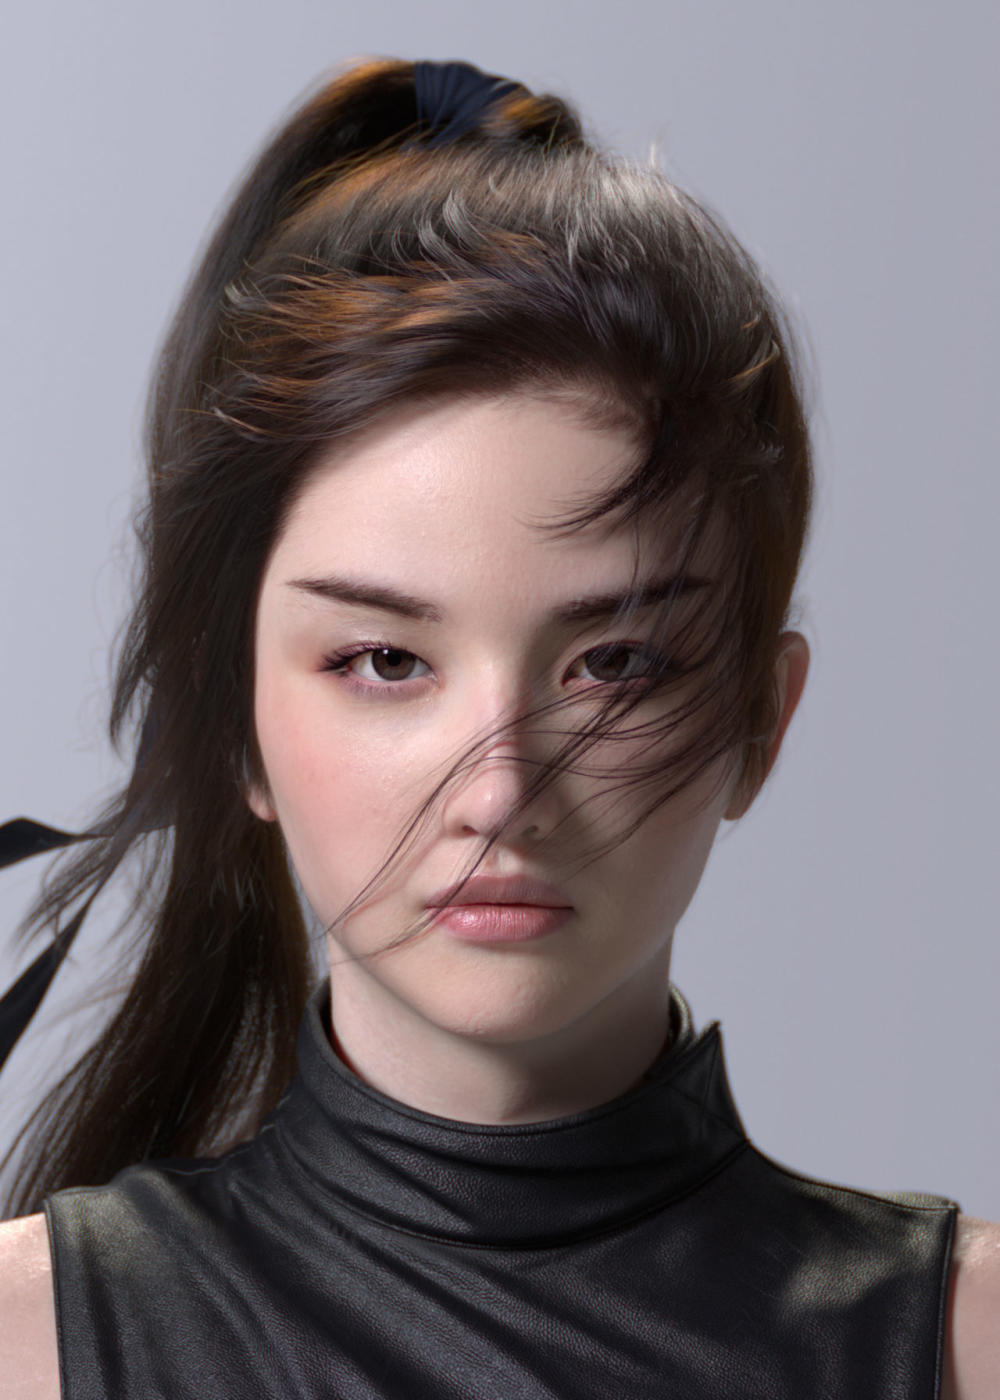 An Amazing CGI Personal Project Sharing Of Liu Yifei Likeness As Mulan - 16